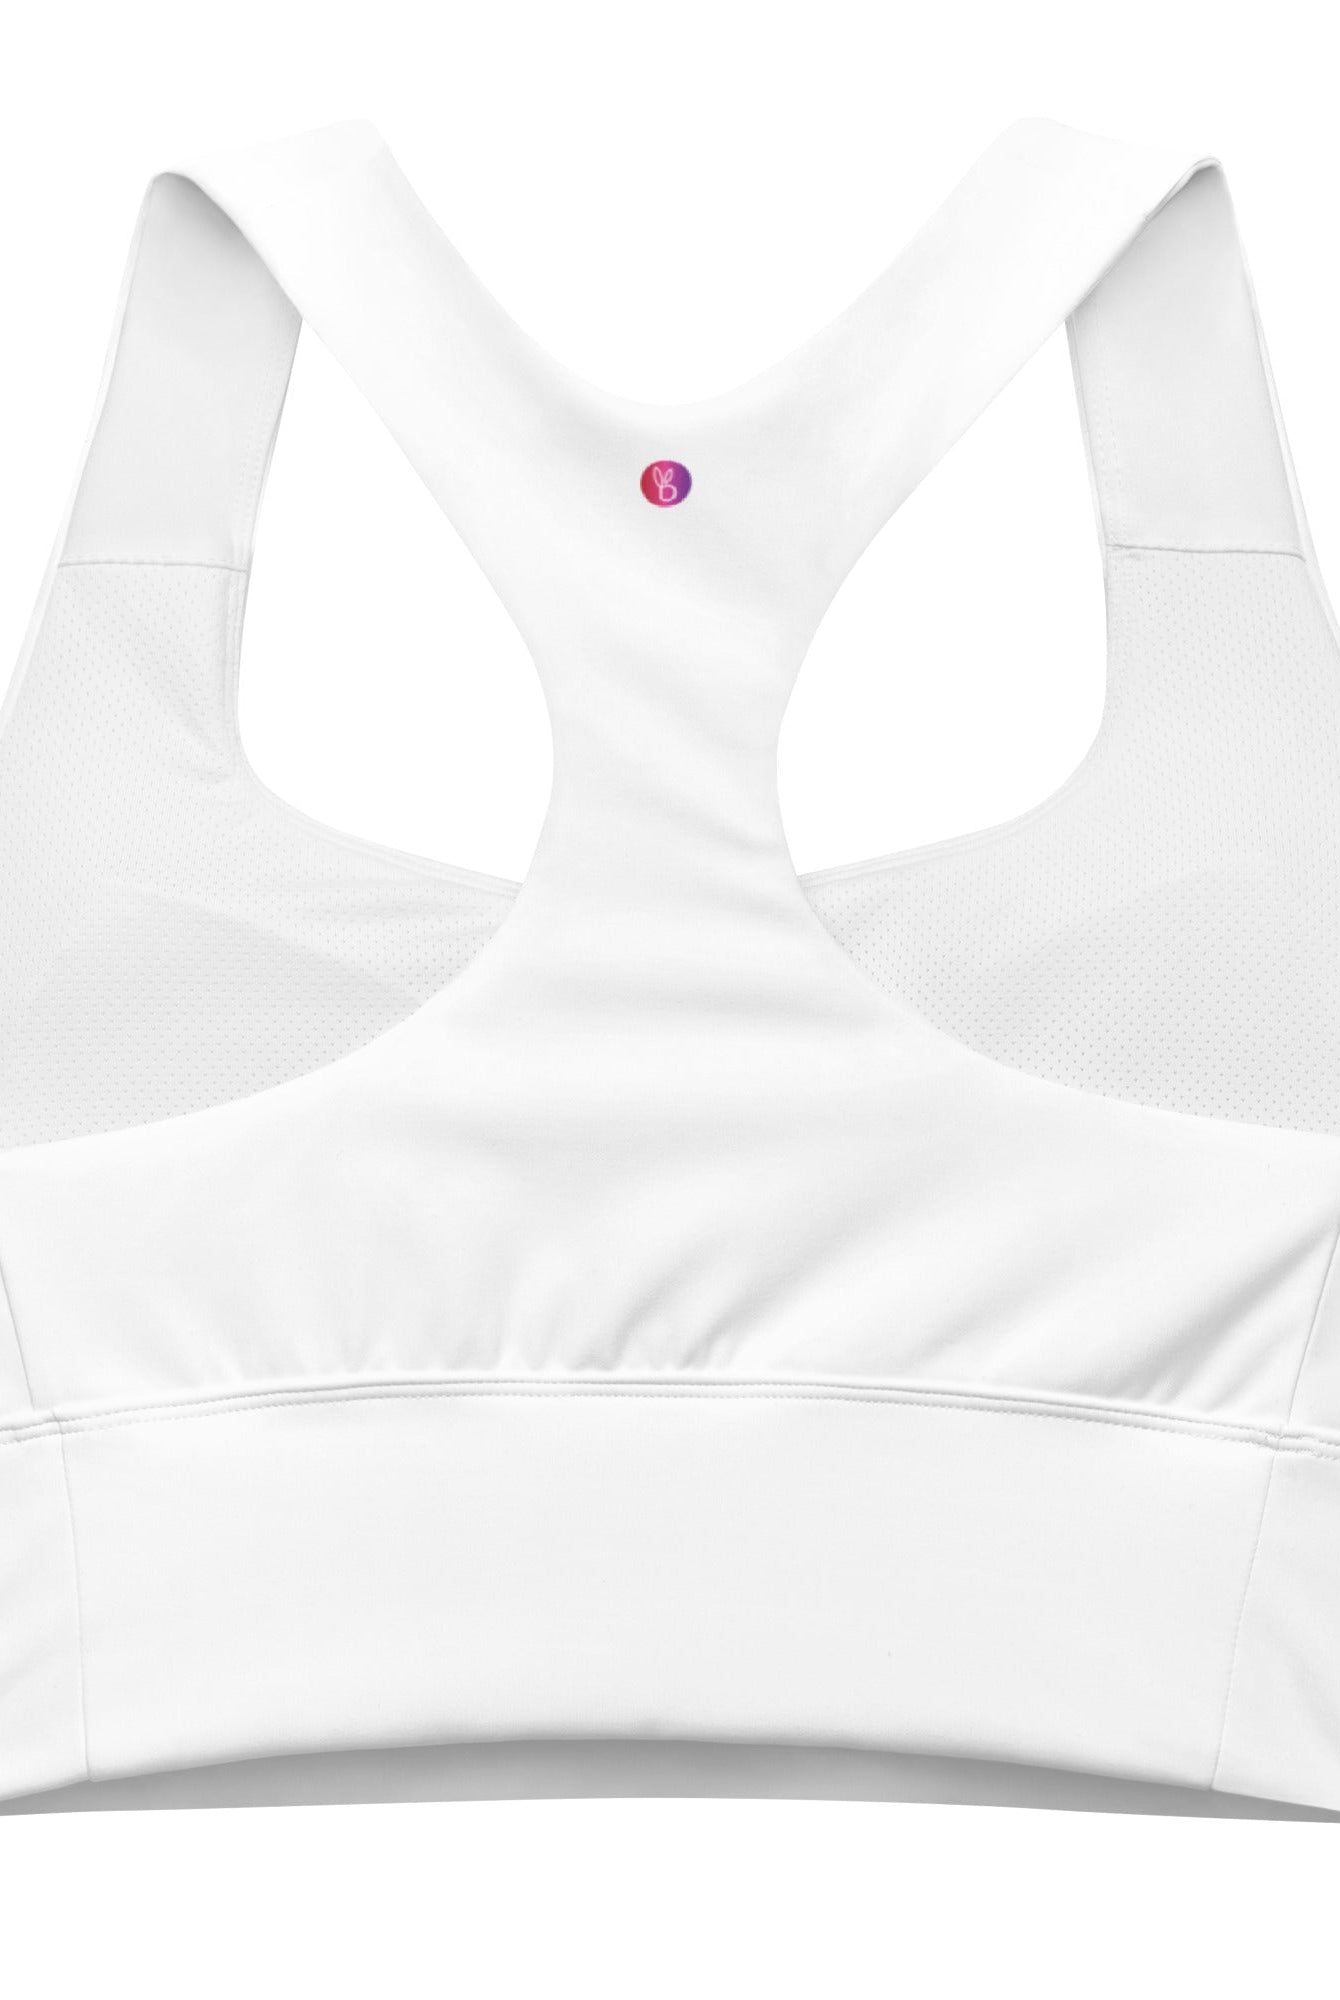 Bellybunny-Women's Longline Sports Bra-White with Rainbow Logo